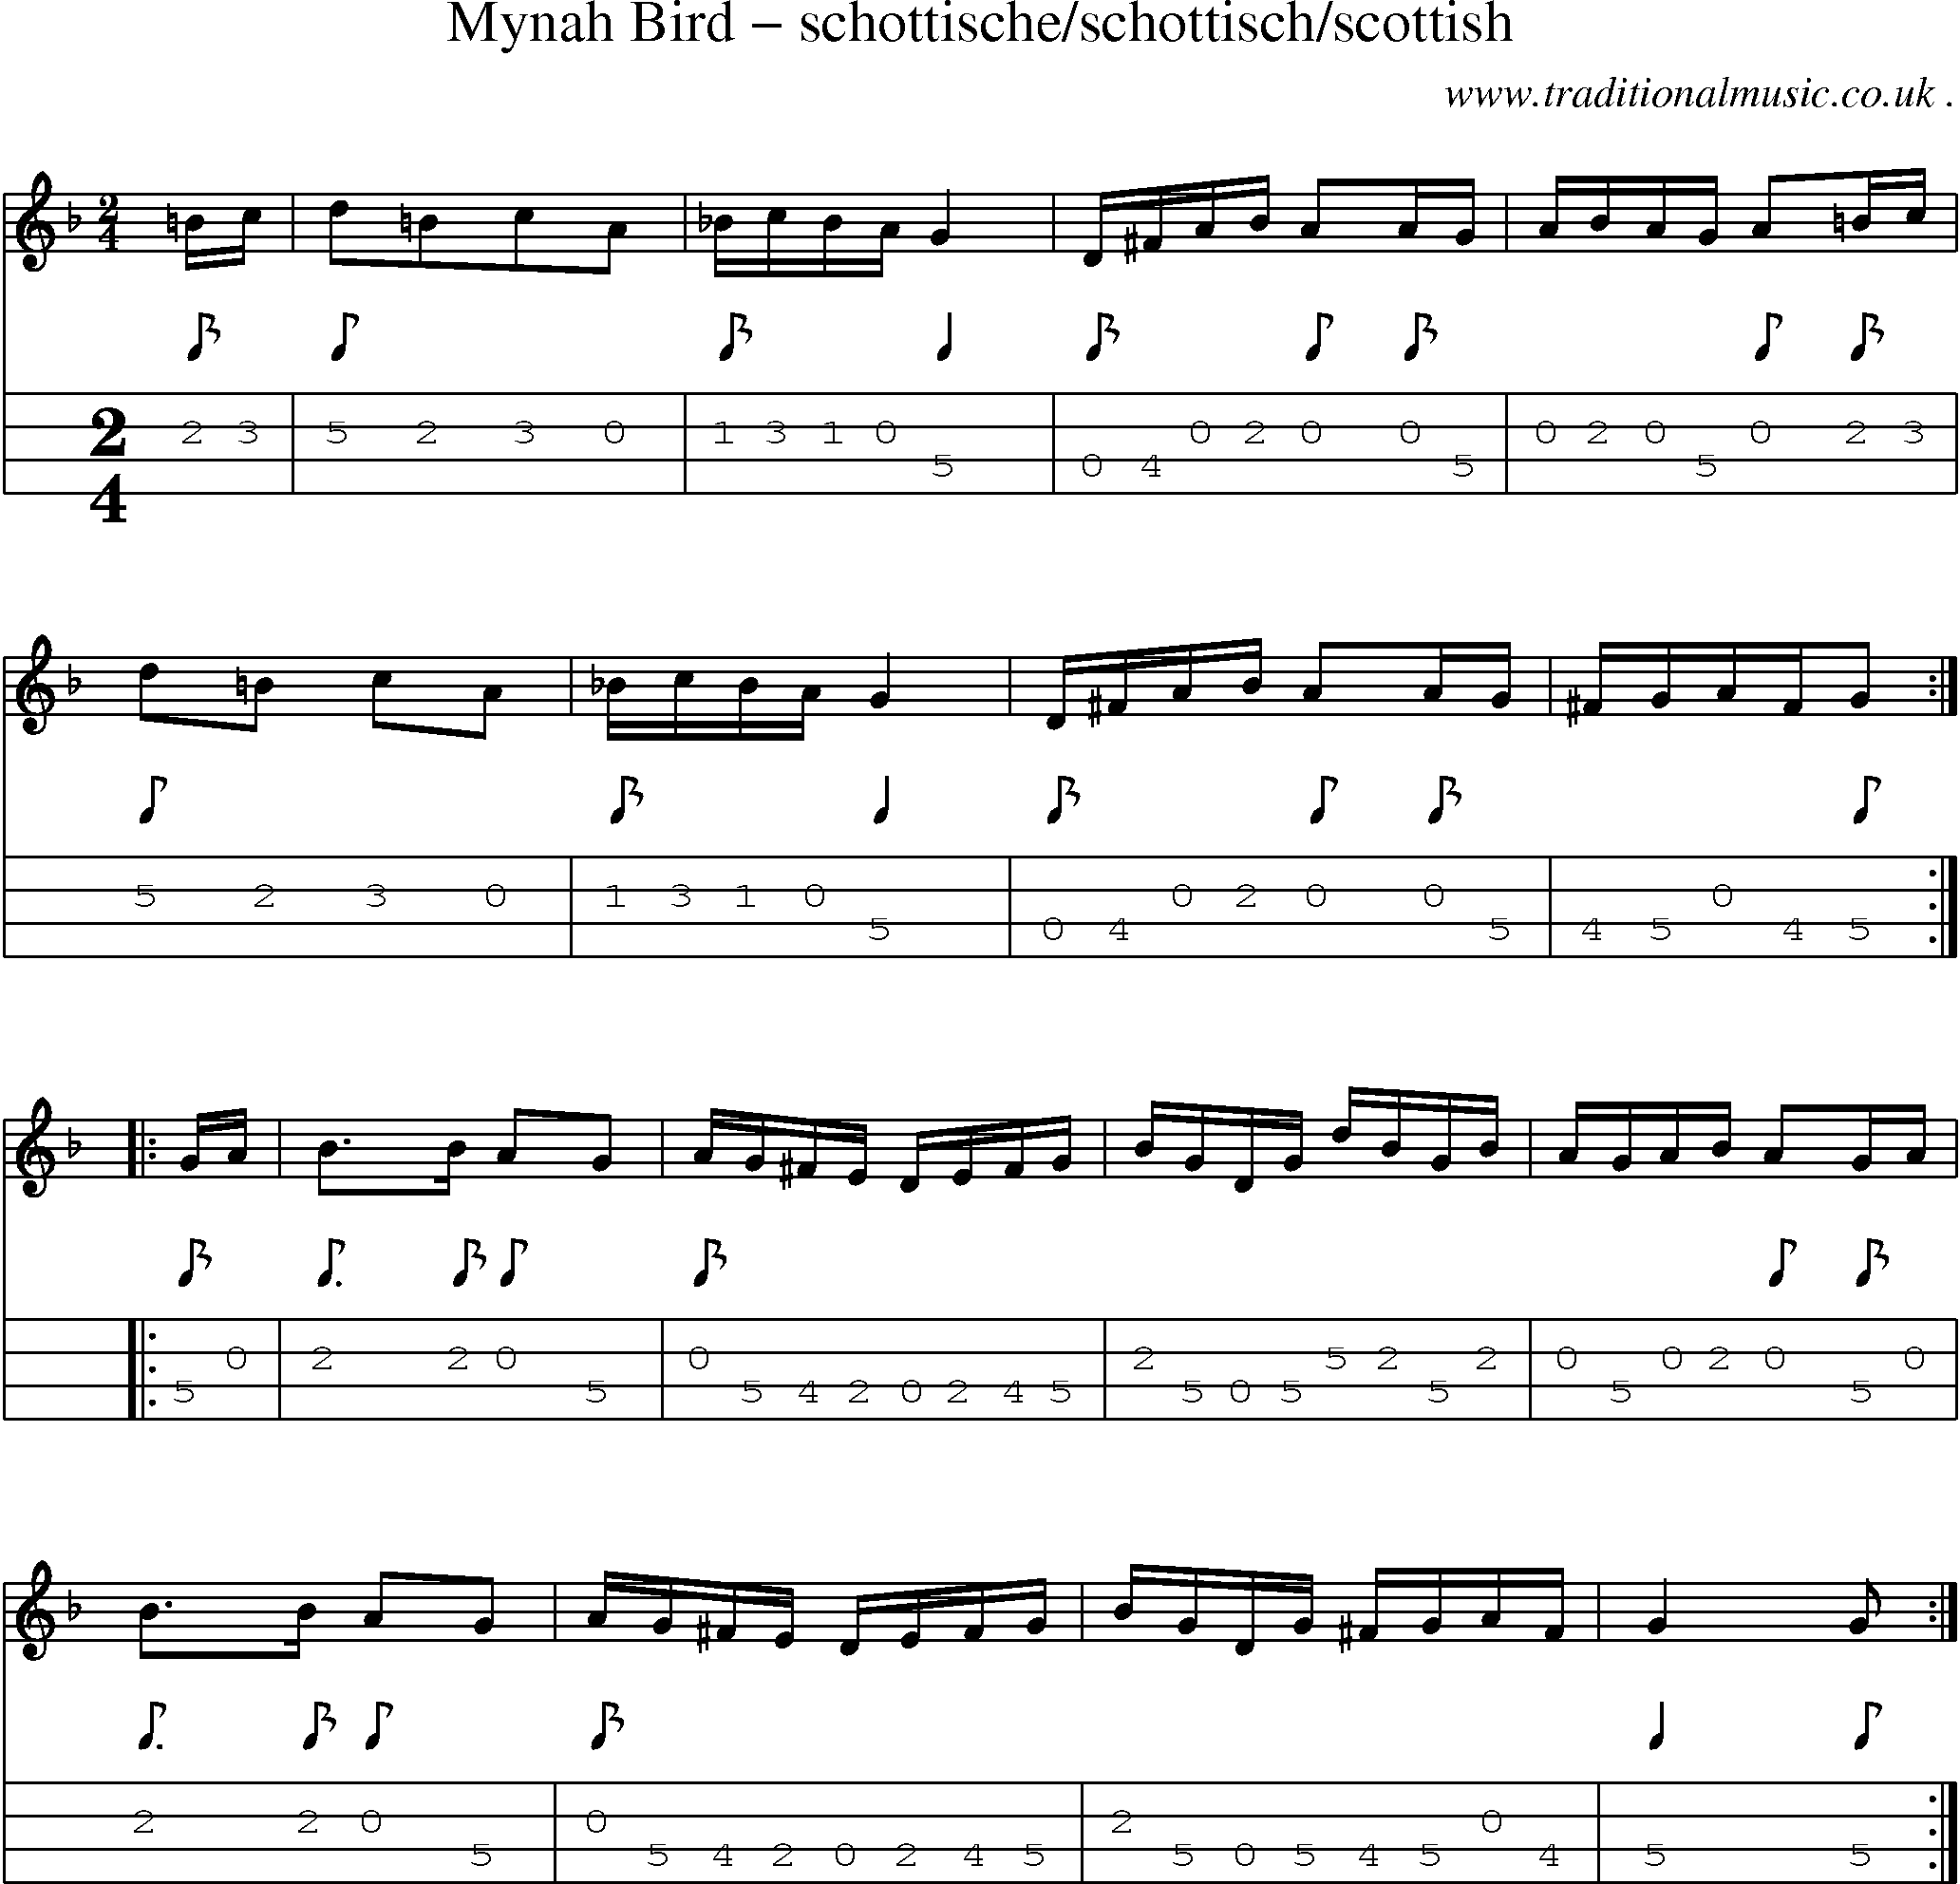 Sheet-Music and Mandolin Tabs for Mynah Bird Schottischeschottischscottish